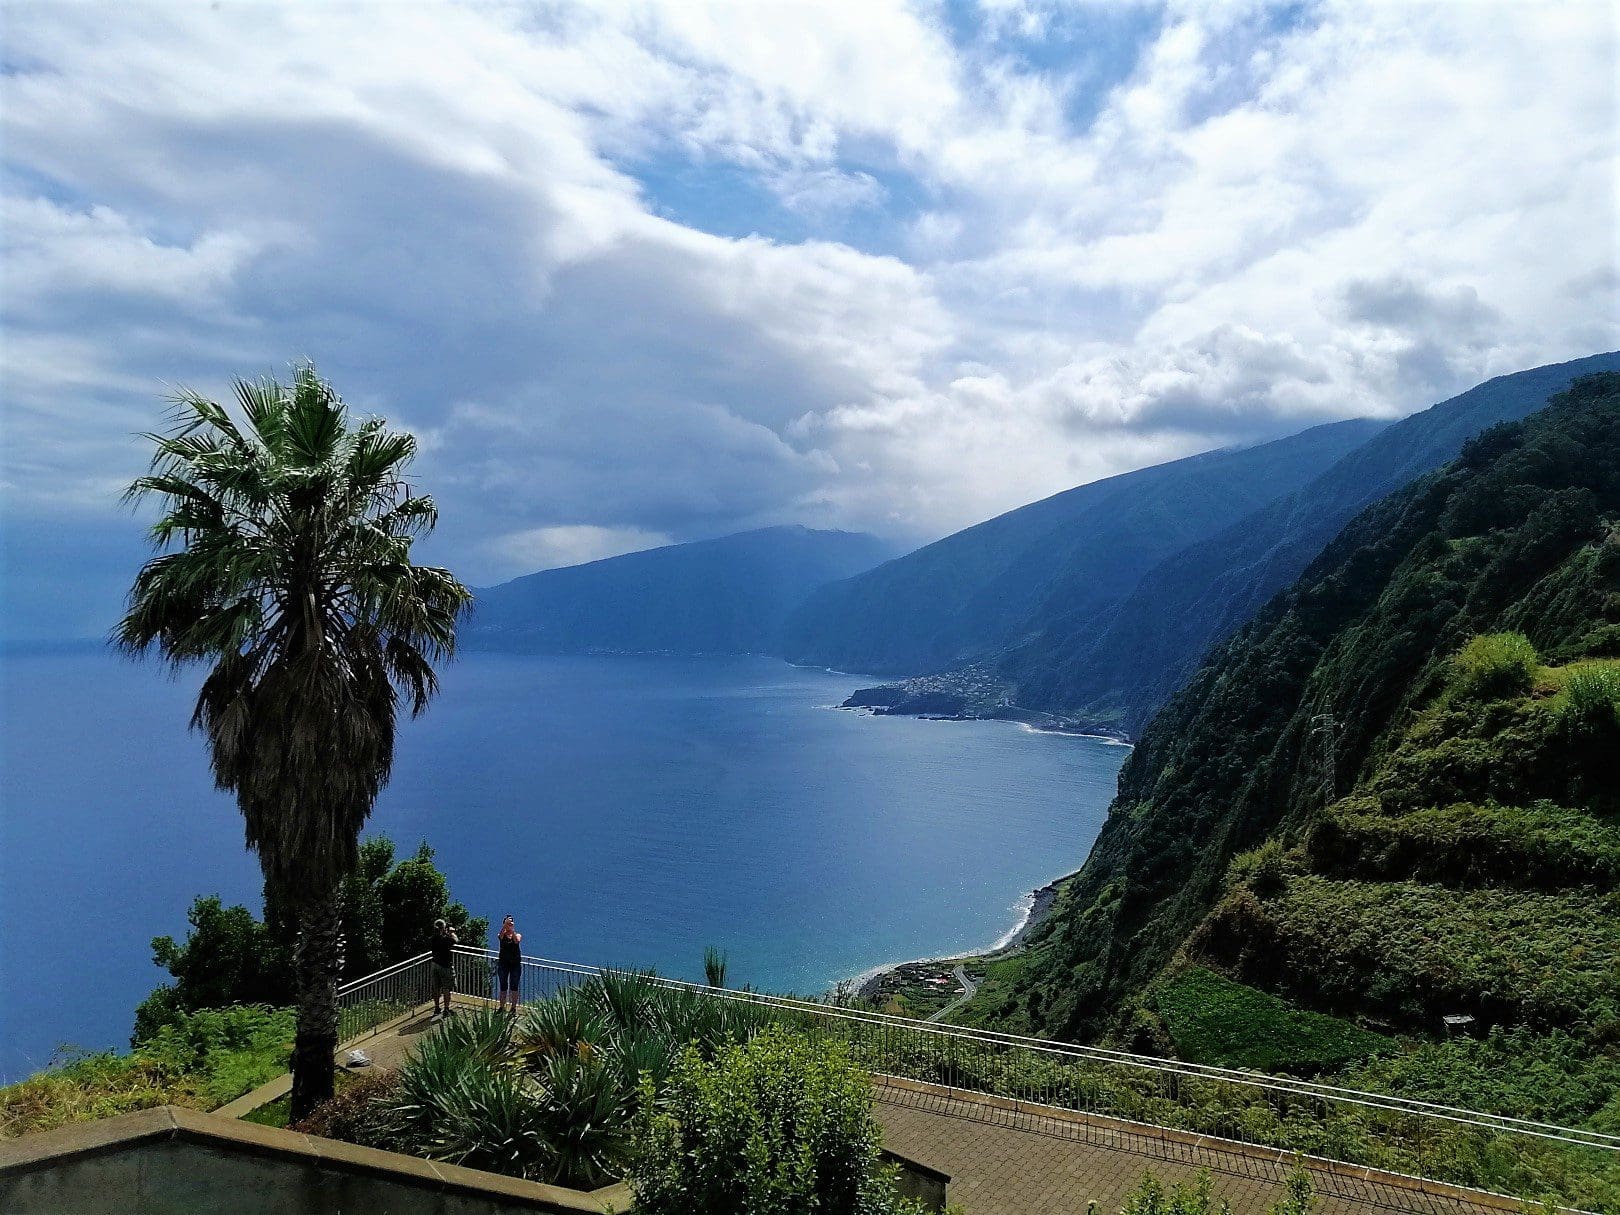 Madeira Holidays